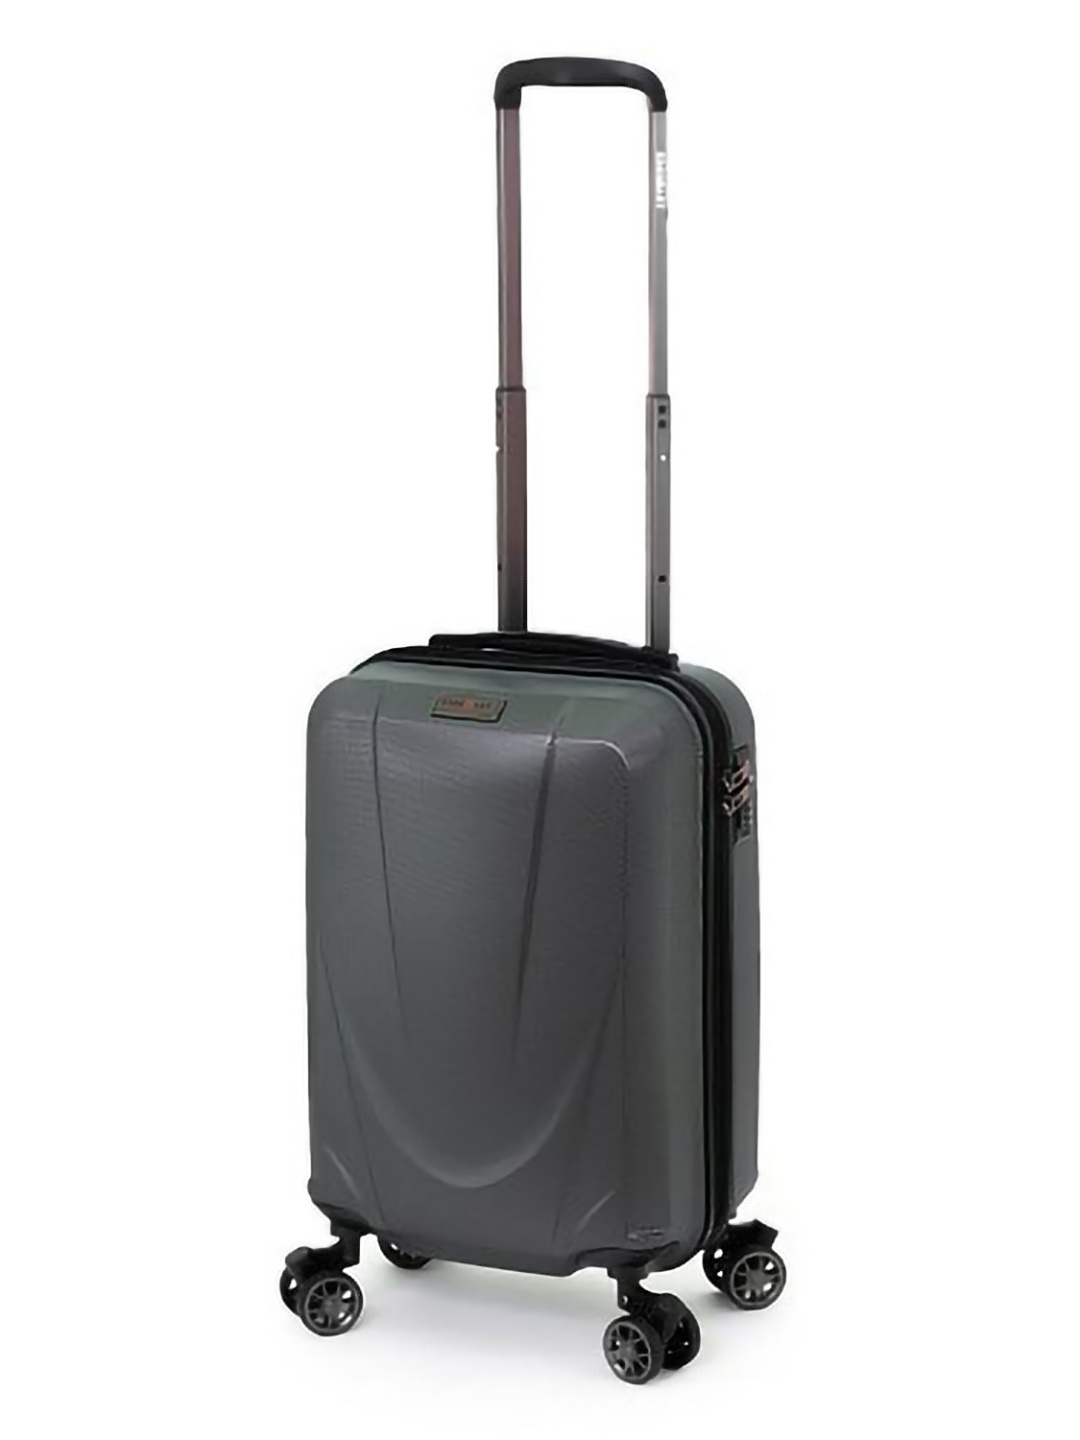 Фото Маленький чемодан на двойных колесах с амортизаторами серии Drive Чемоданы